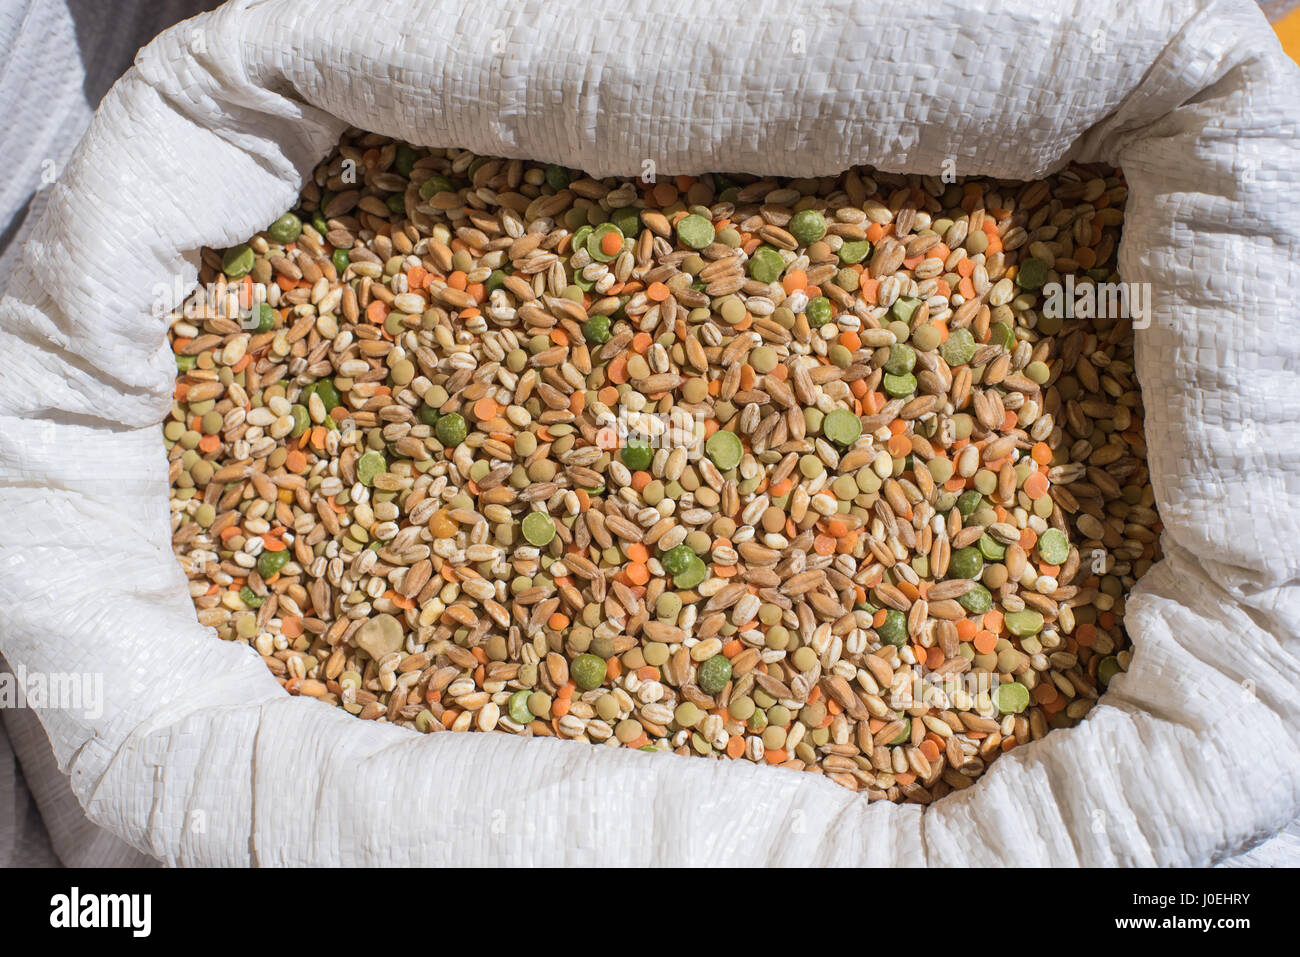 Misto di legumi e cereali pattern dettaglio nella borsa bianca sul ripiano del mercato Foto Stock